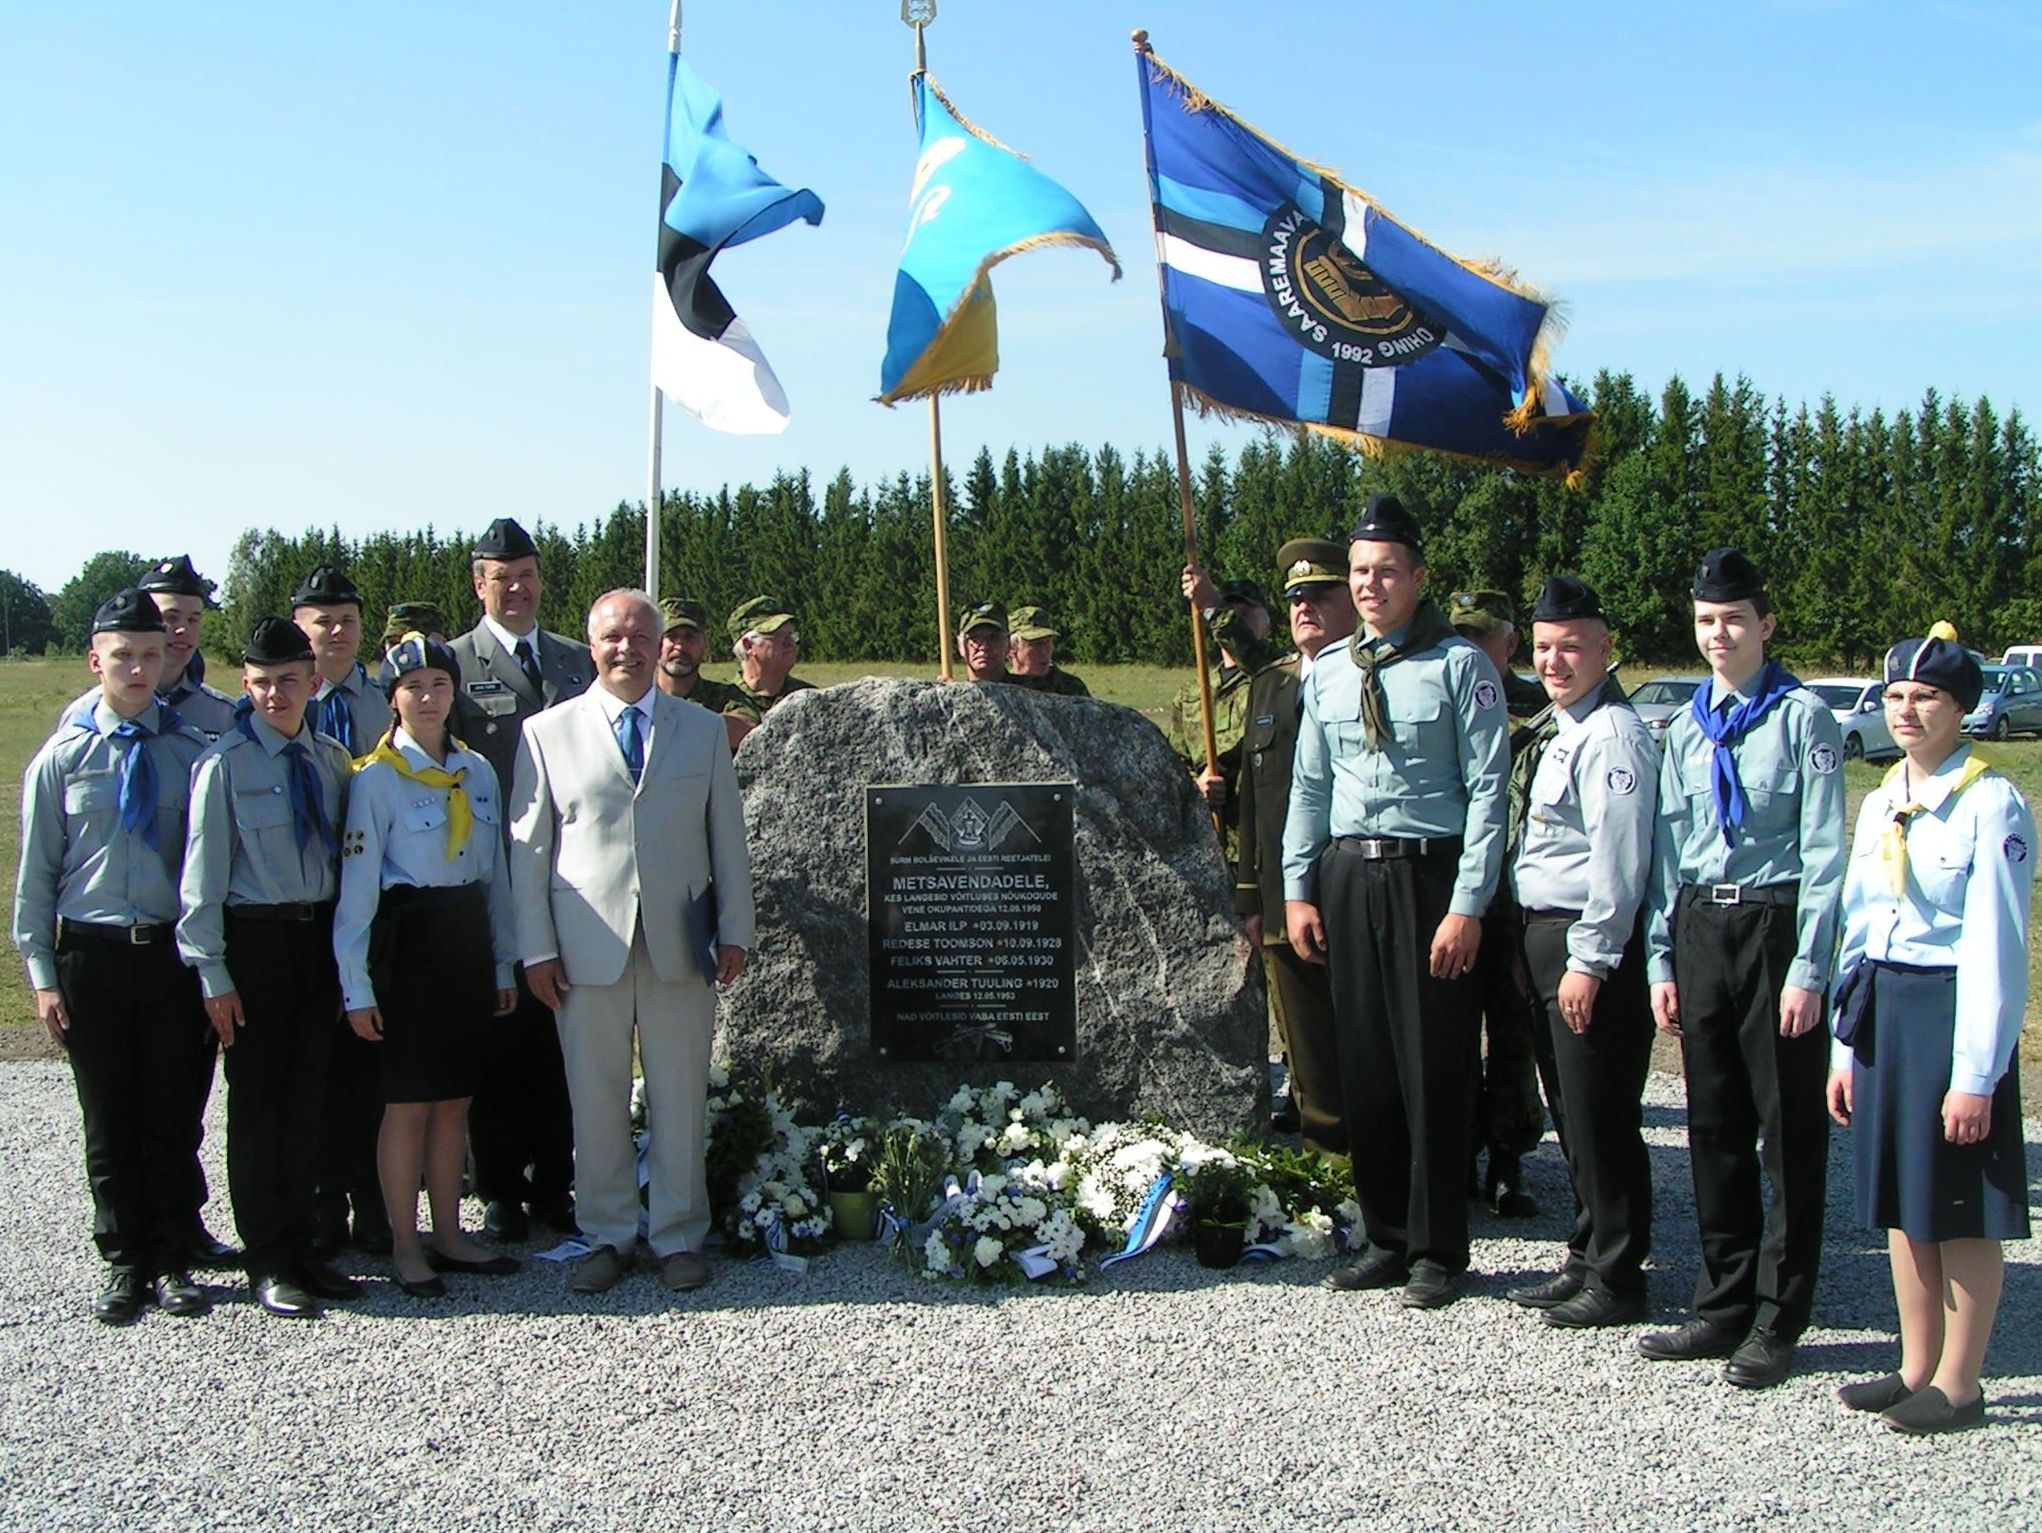 Открытие памятника Эльмару Илпу и его отряду в деревне Луулупе на Сааремаа